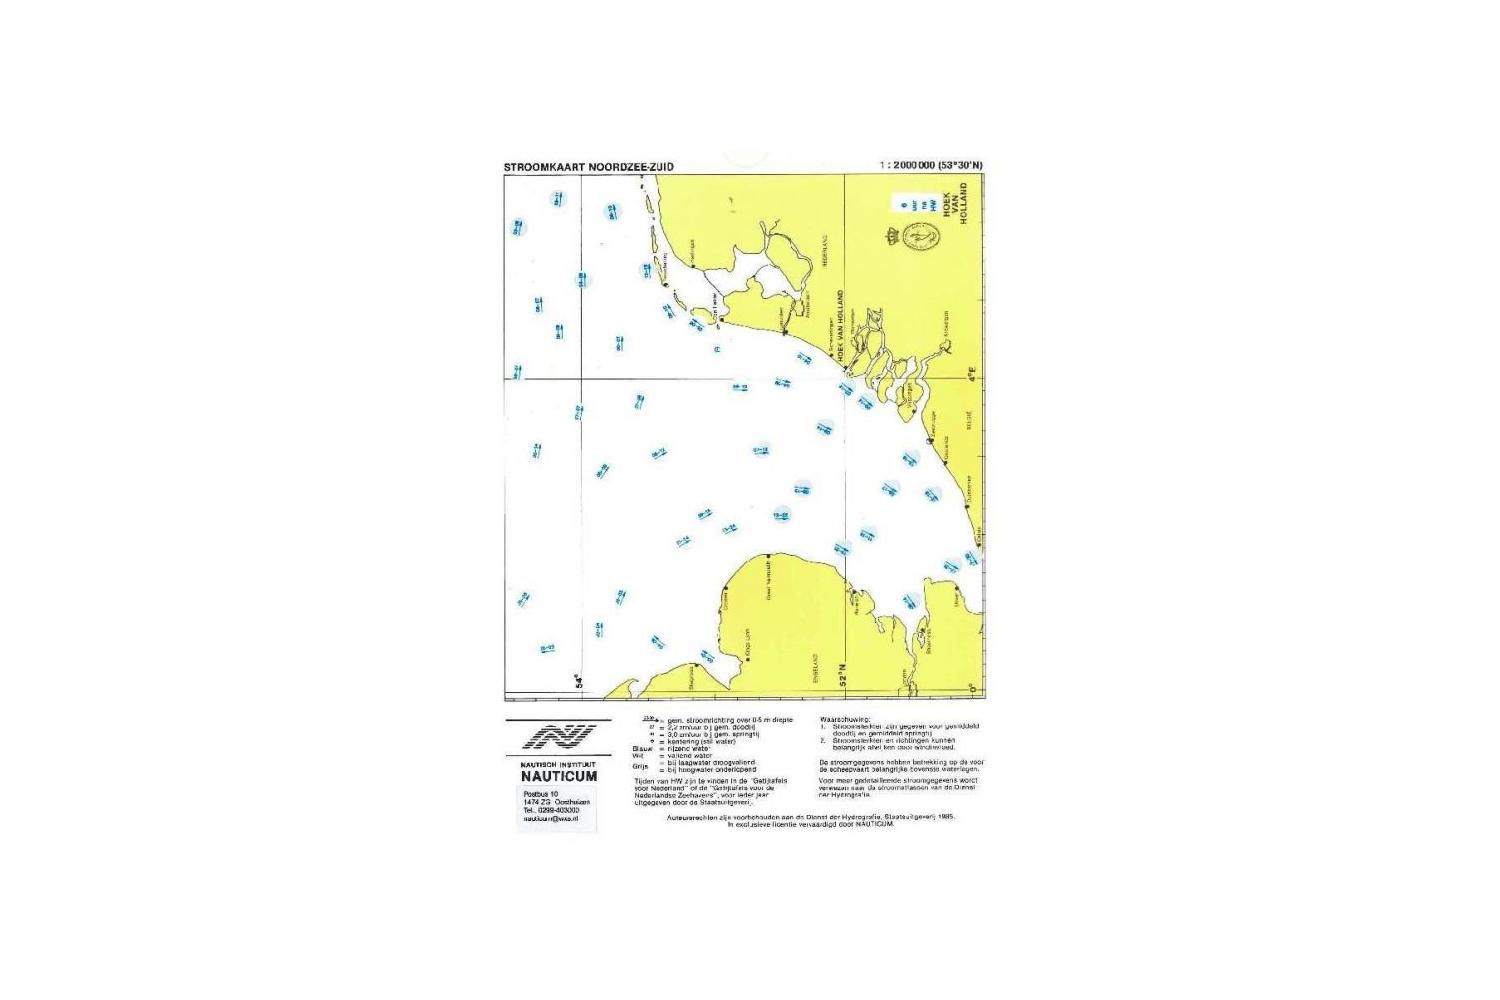 Stroomschuifkaart Noordzee Zuid